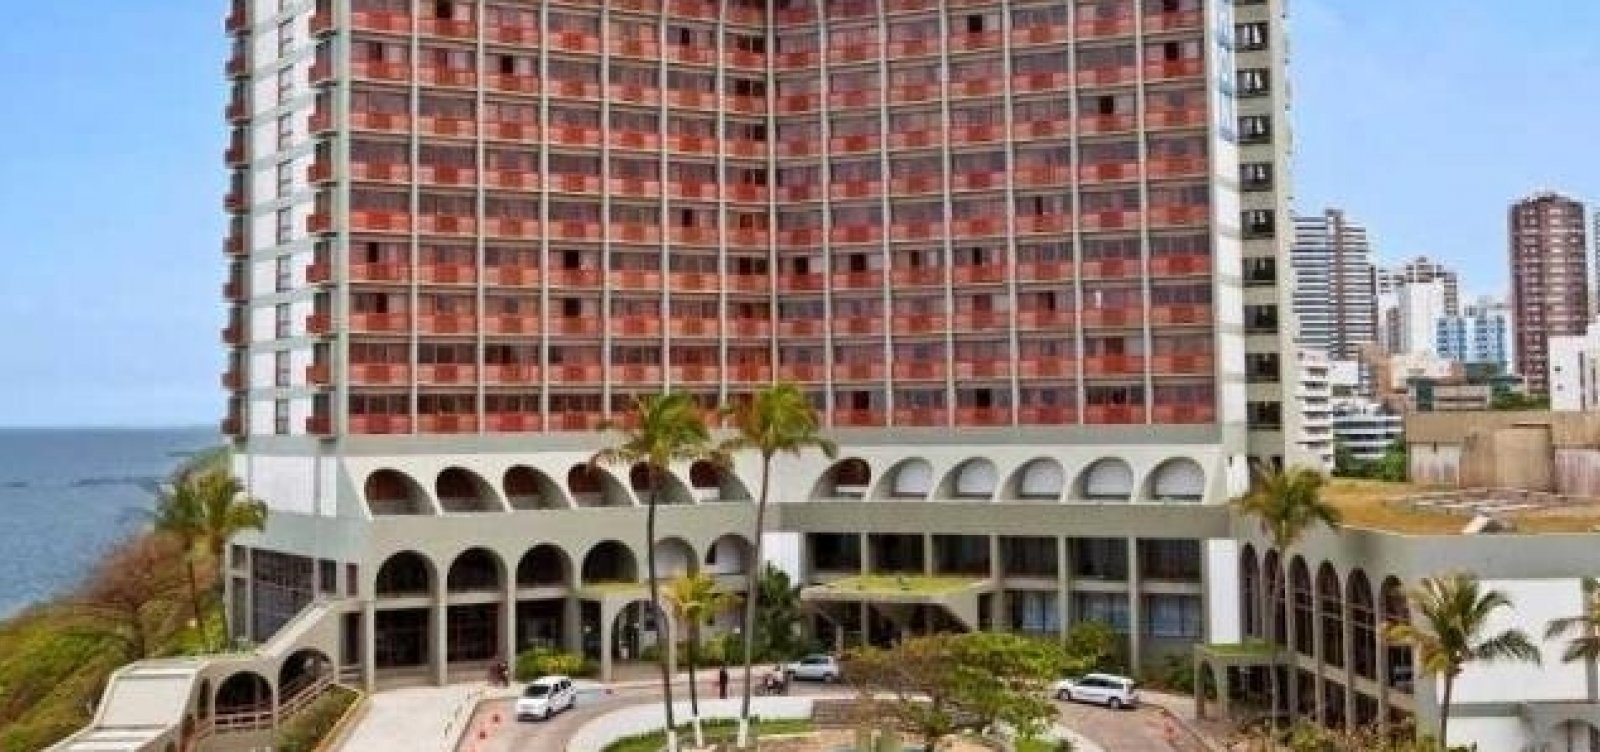 Rede Othon nega venda de prédio em Salvador